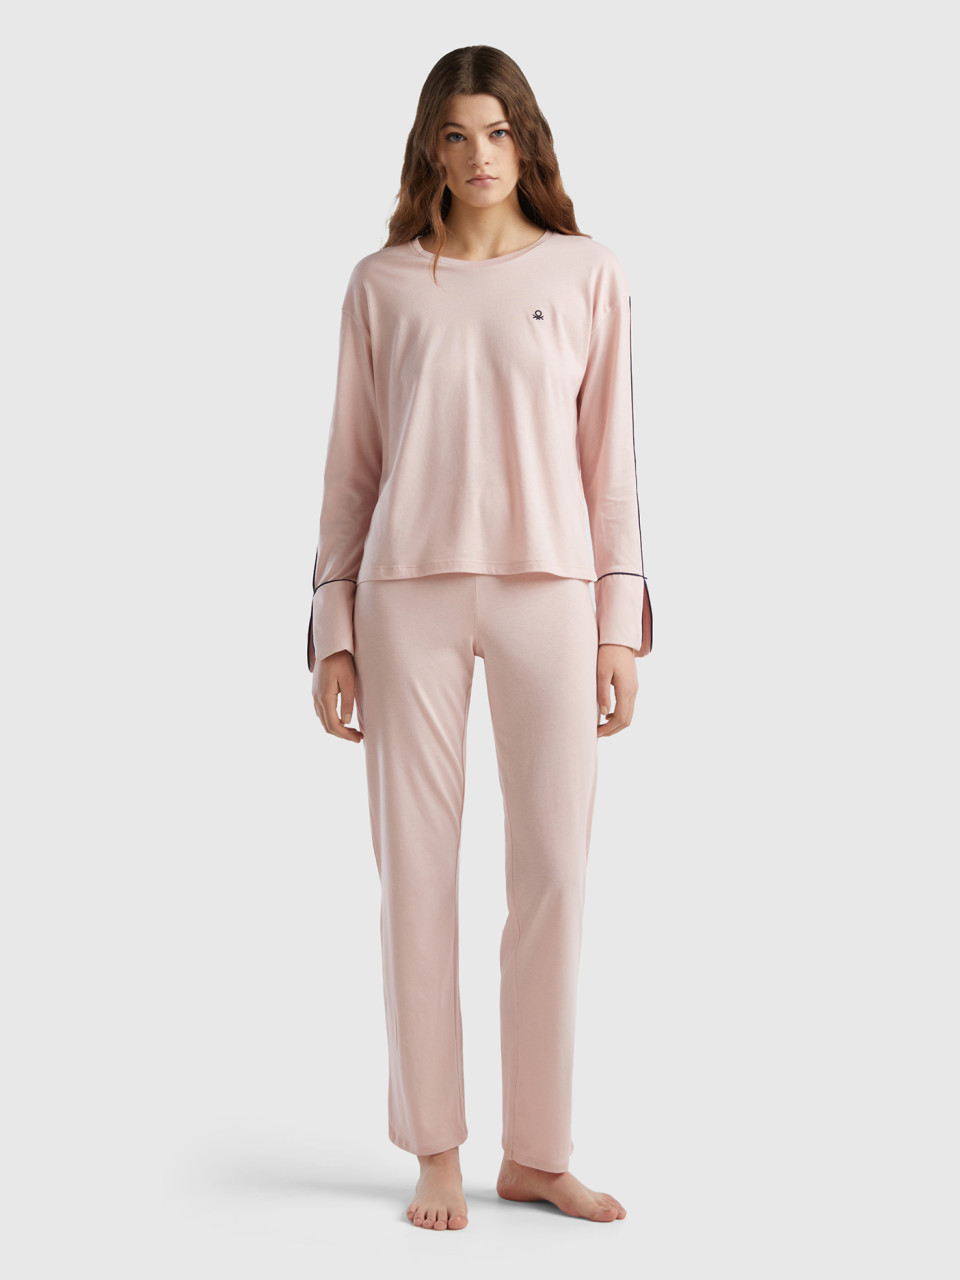 Benetton, Warm Viscose Blend Pyjamas, Soft Pink, Women